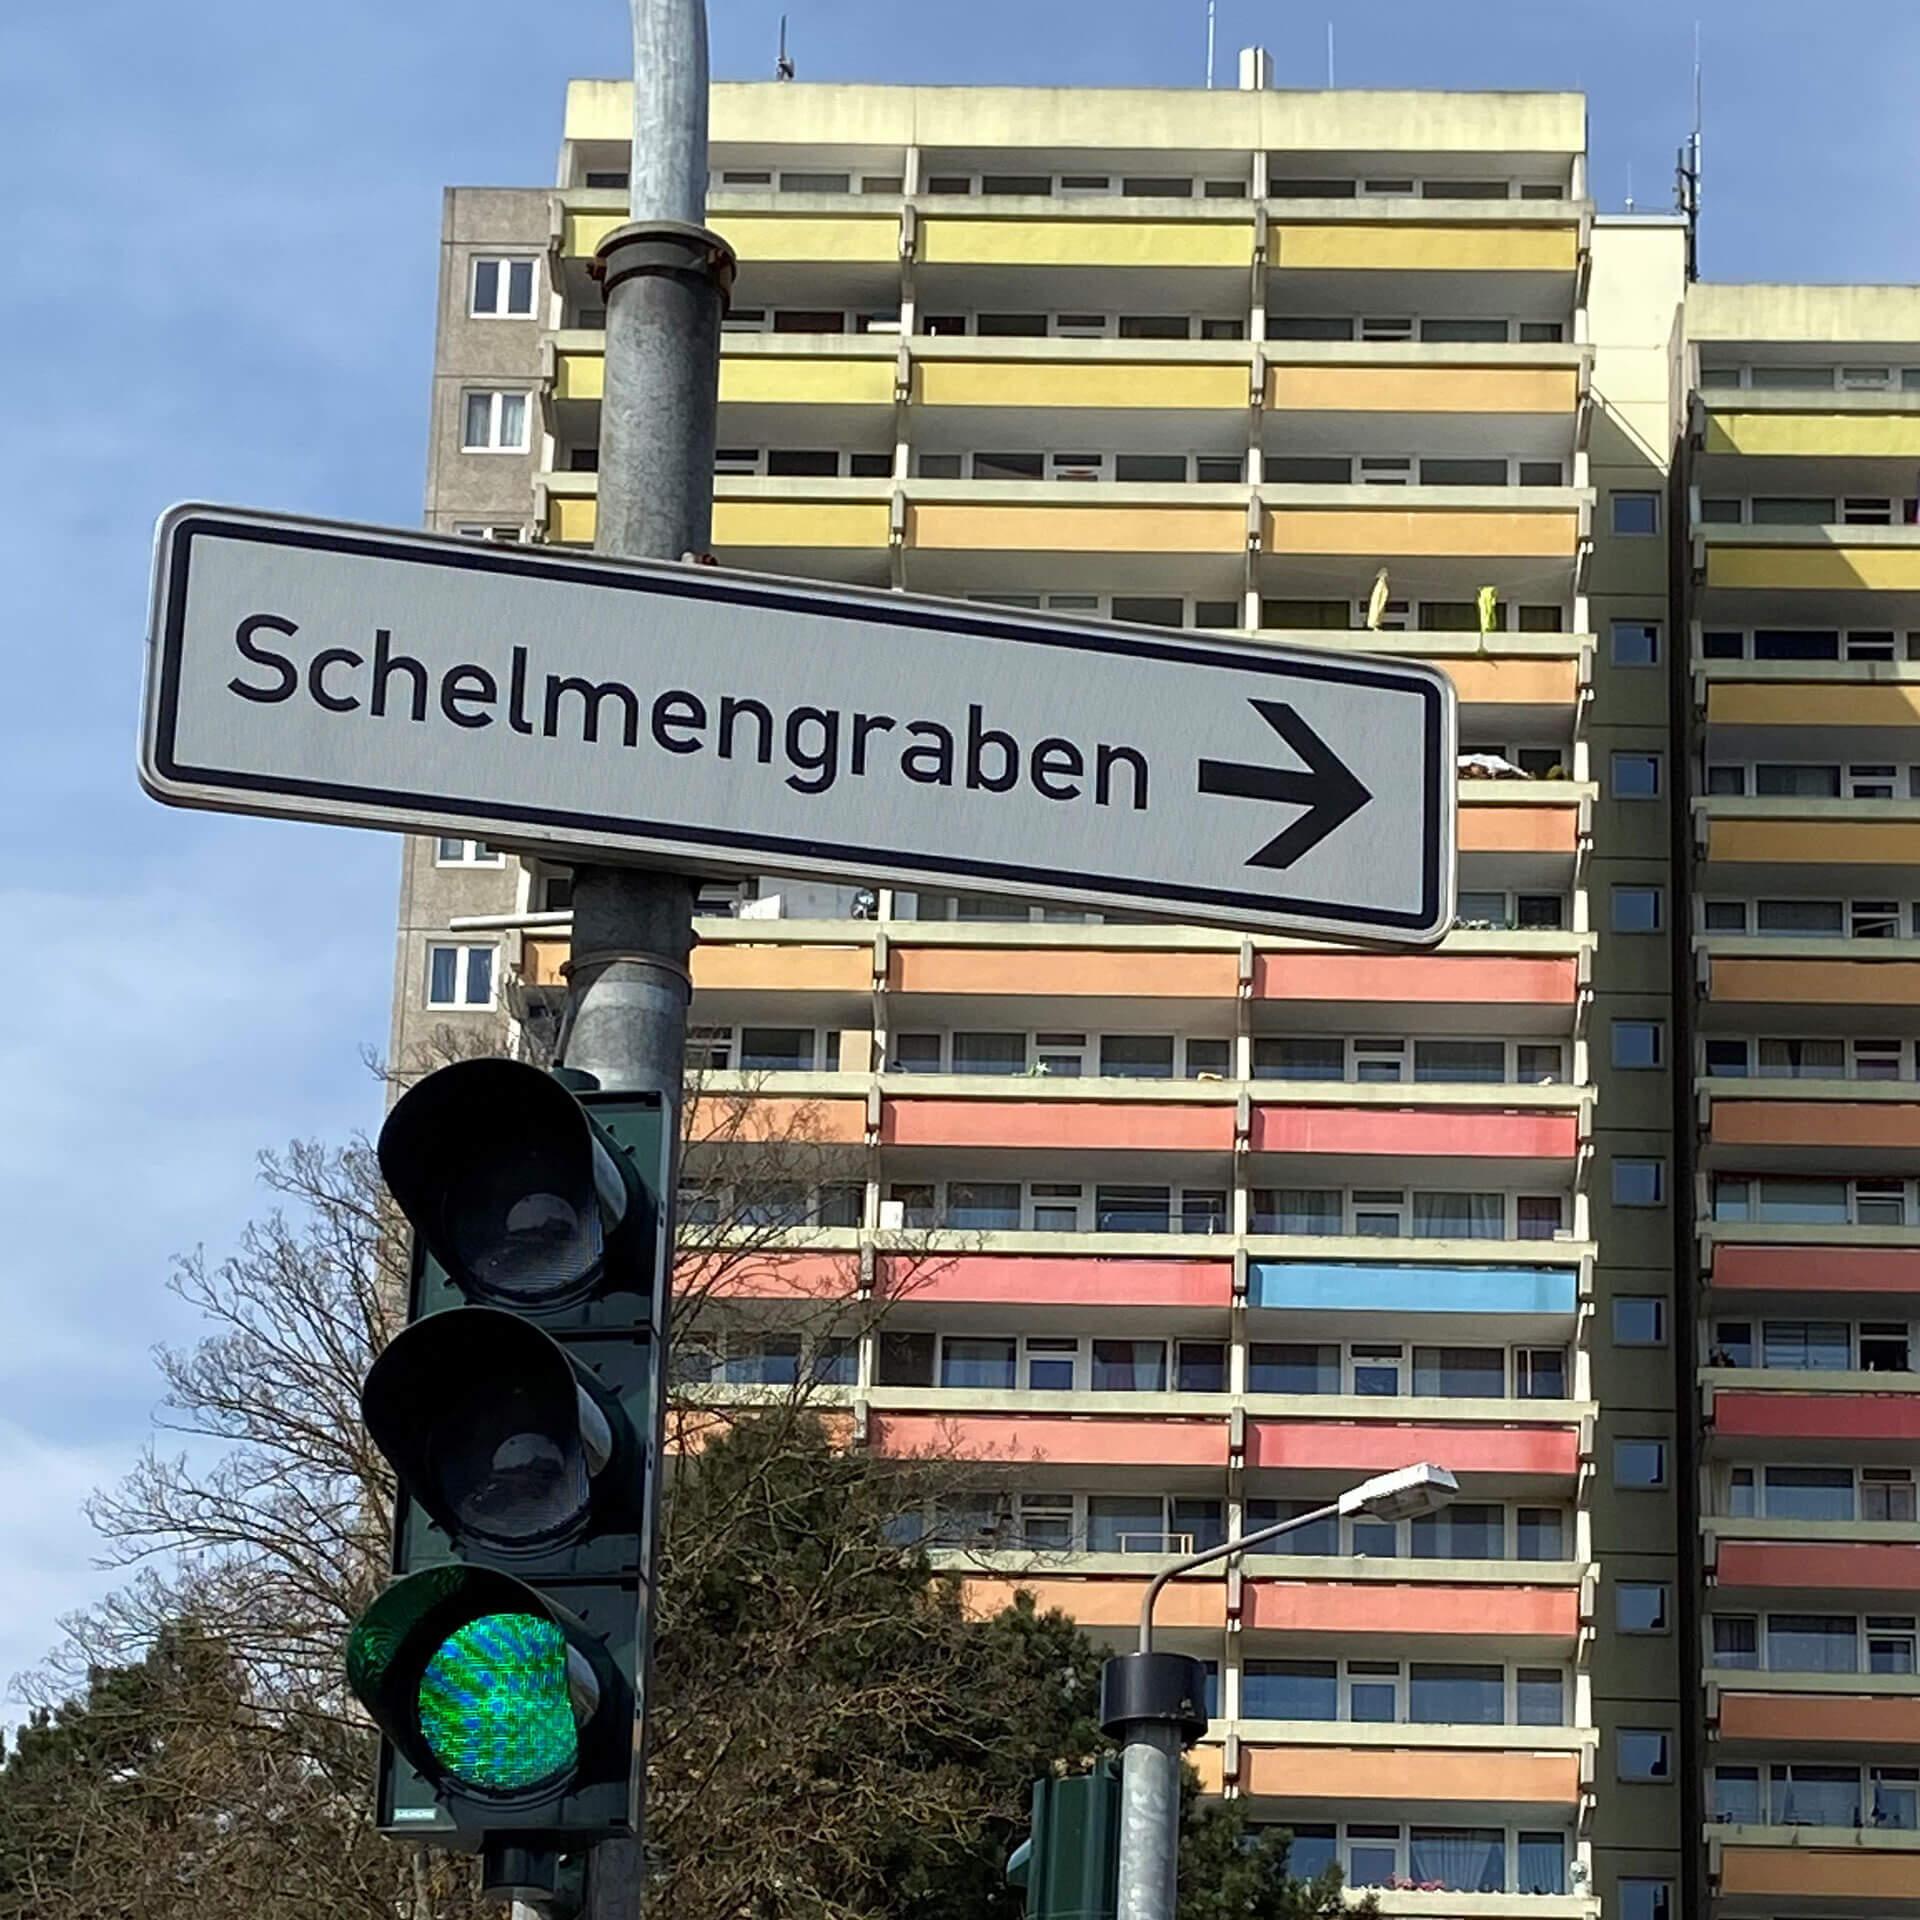 Grüne Ampel mit Straßenschild "Schelmengrabe" vor Hochhaus